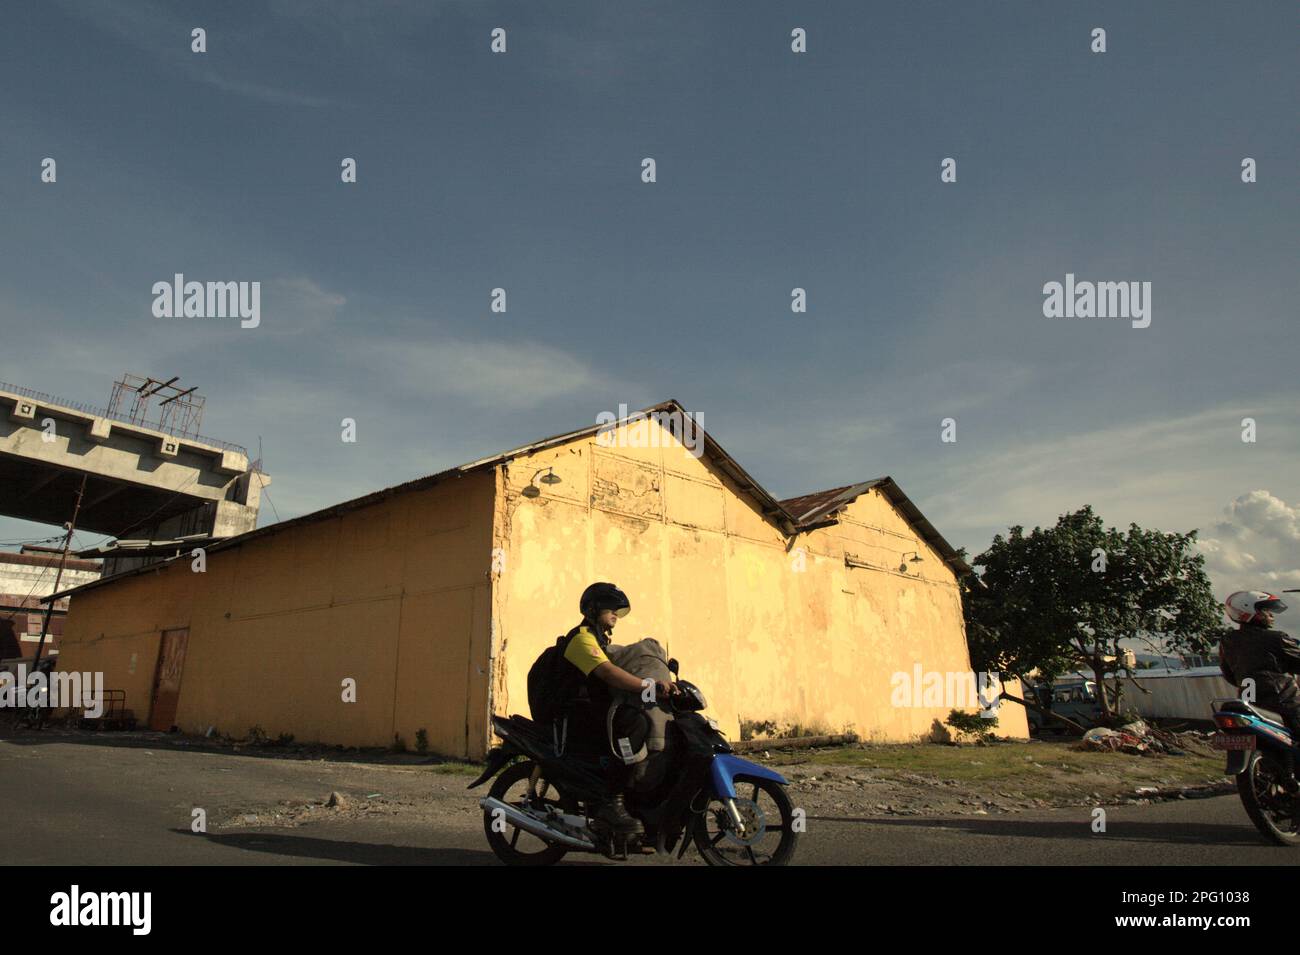 Les automobilistes sont photographiés dans un arrière-plan d'un entrepôt, dans la zone côtière de Manado, au nord de Sulawesi, en Indonésie. Banque D'Images